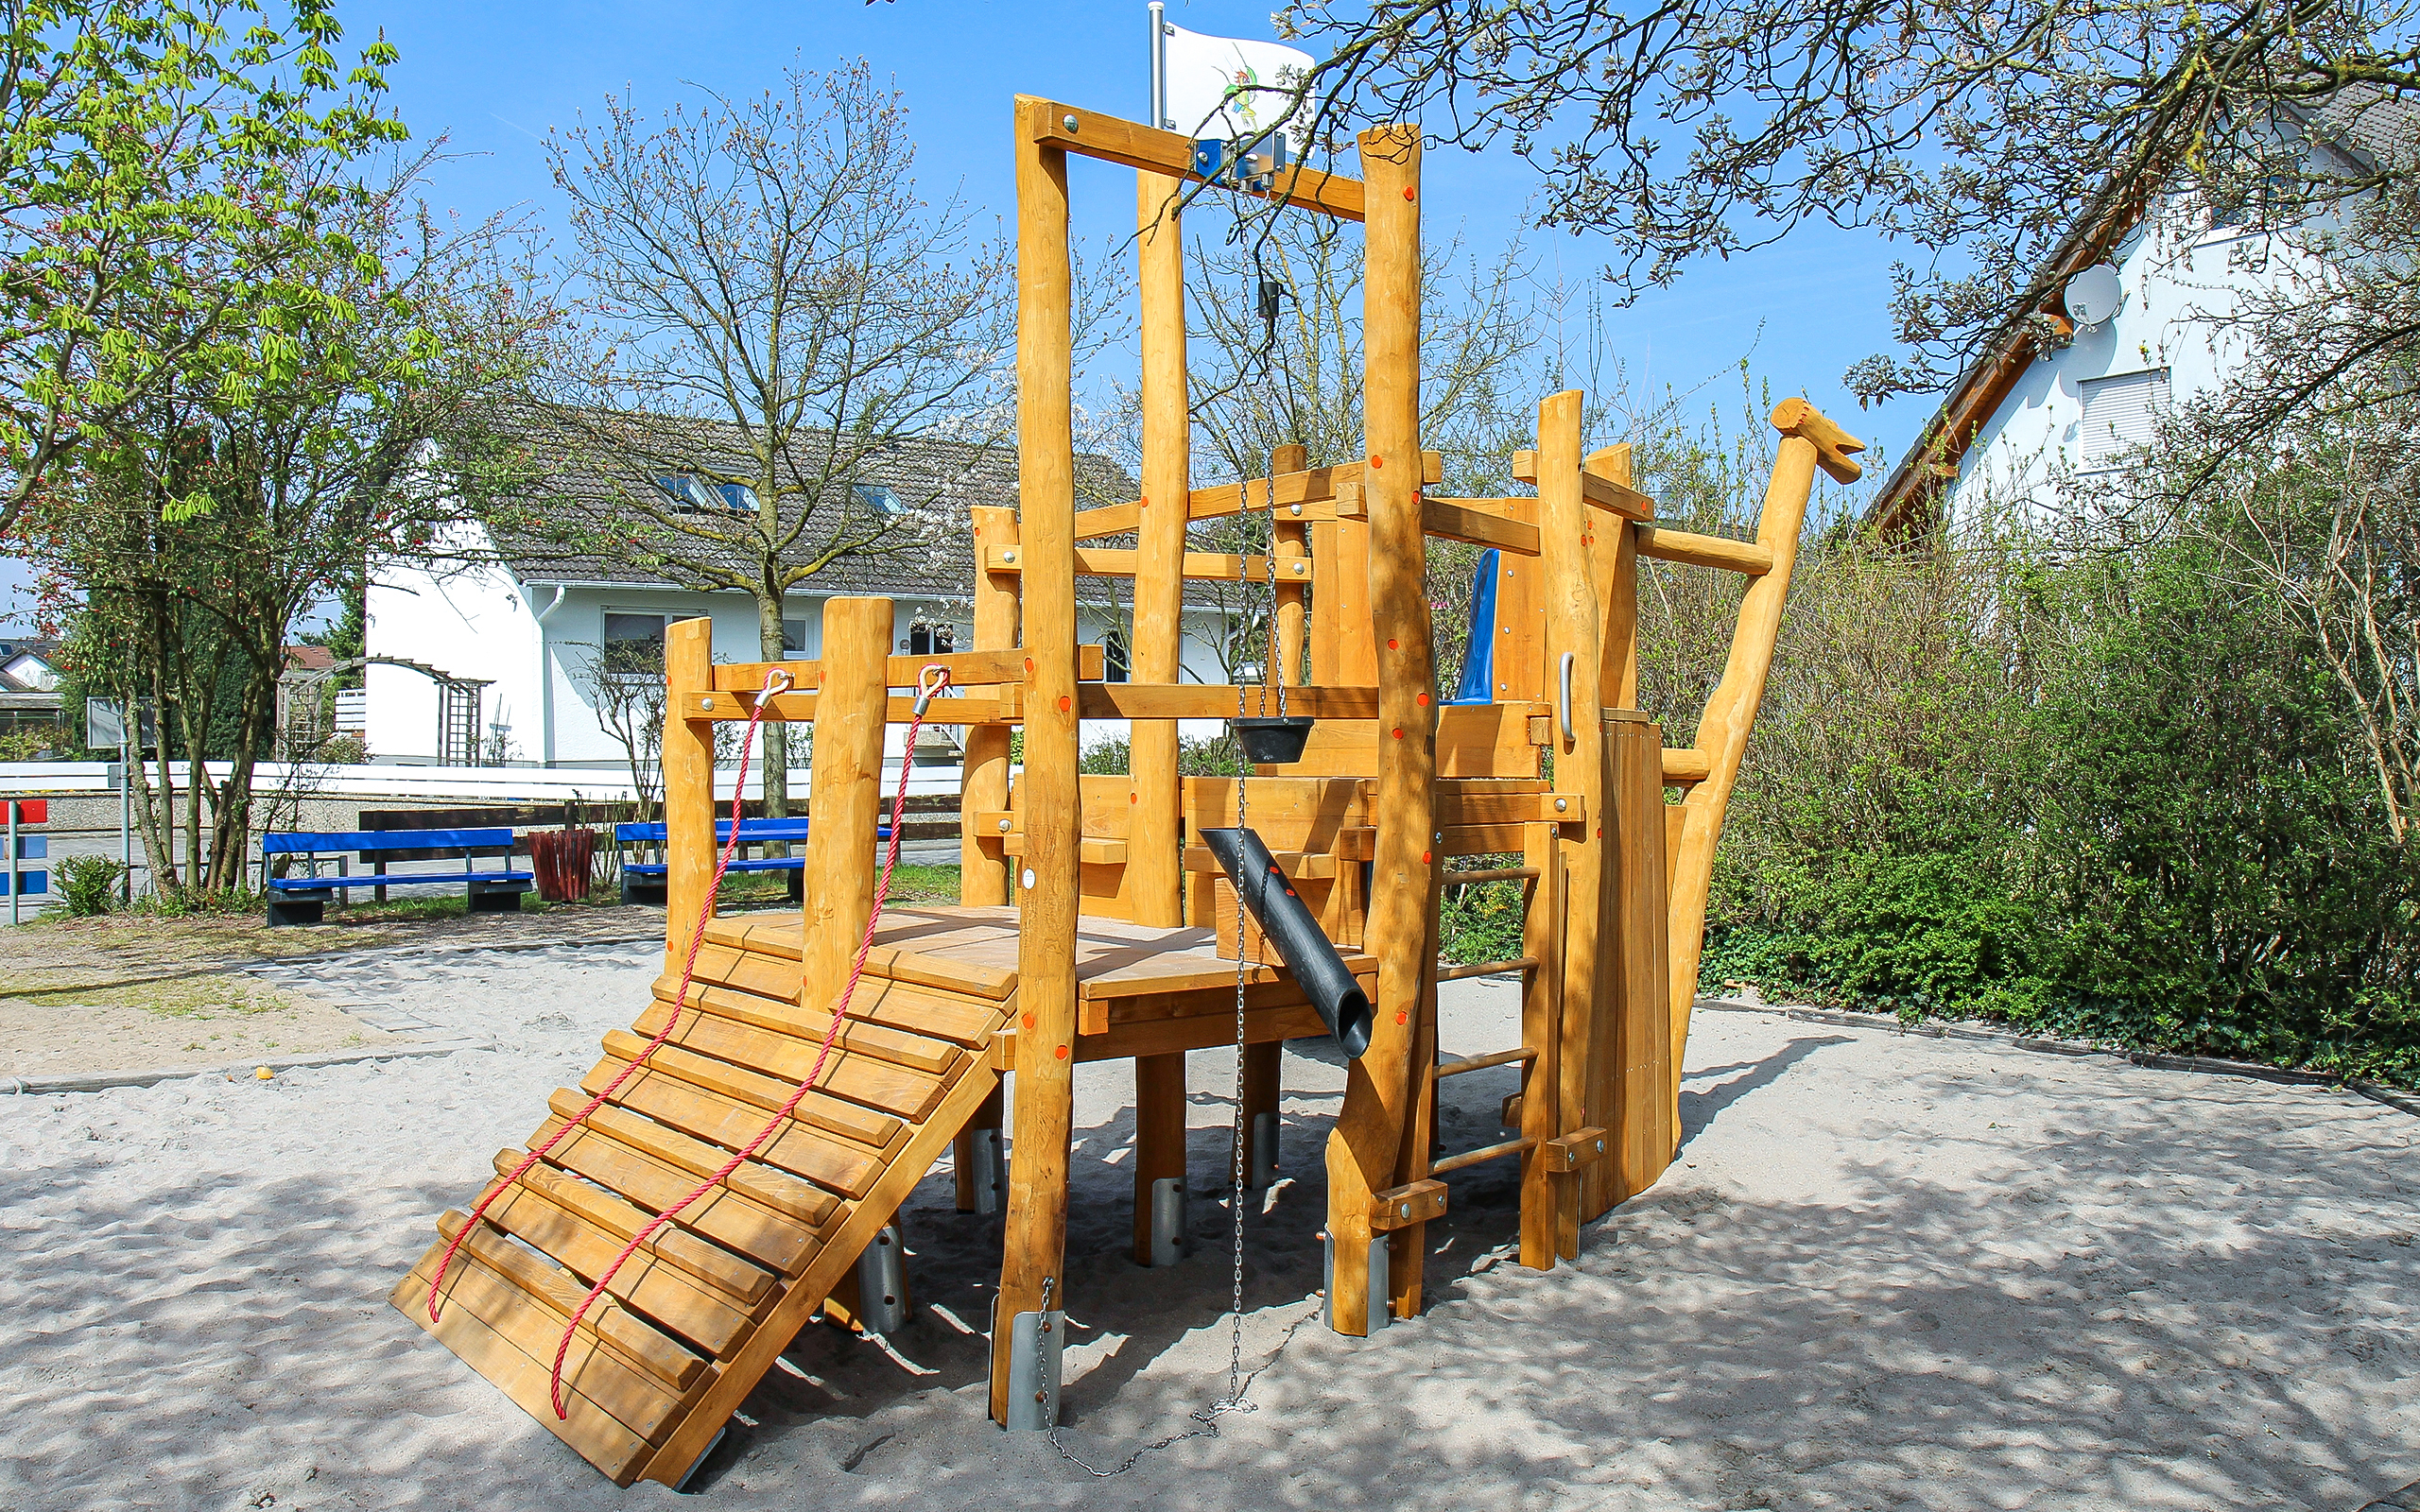 Referenz Spielplatz Zwingenberg